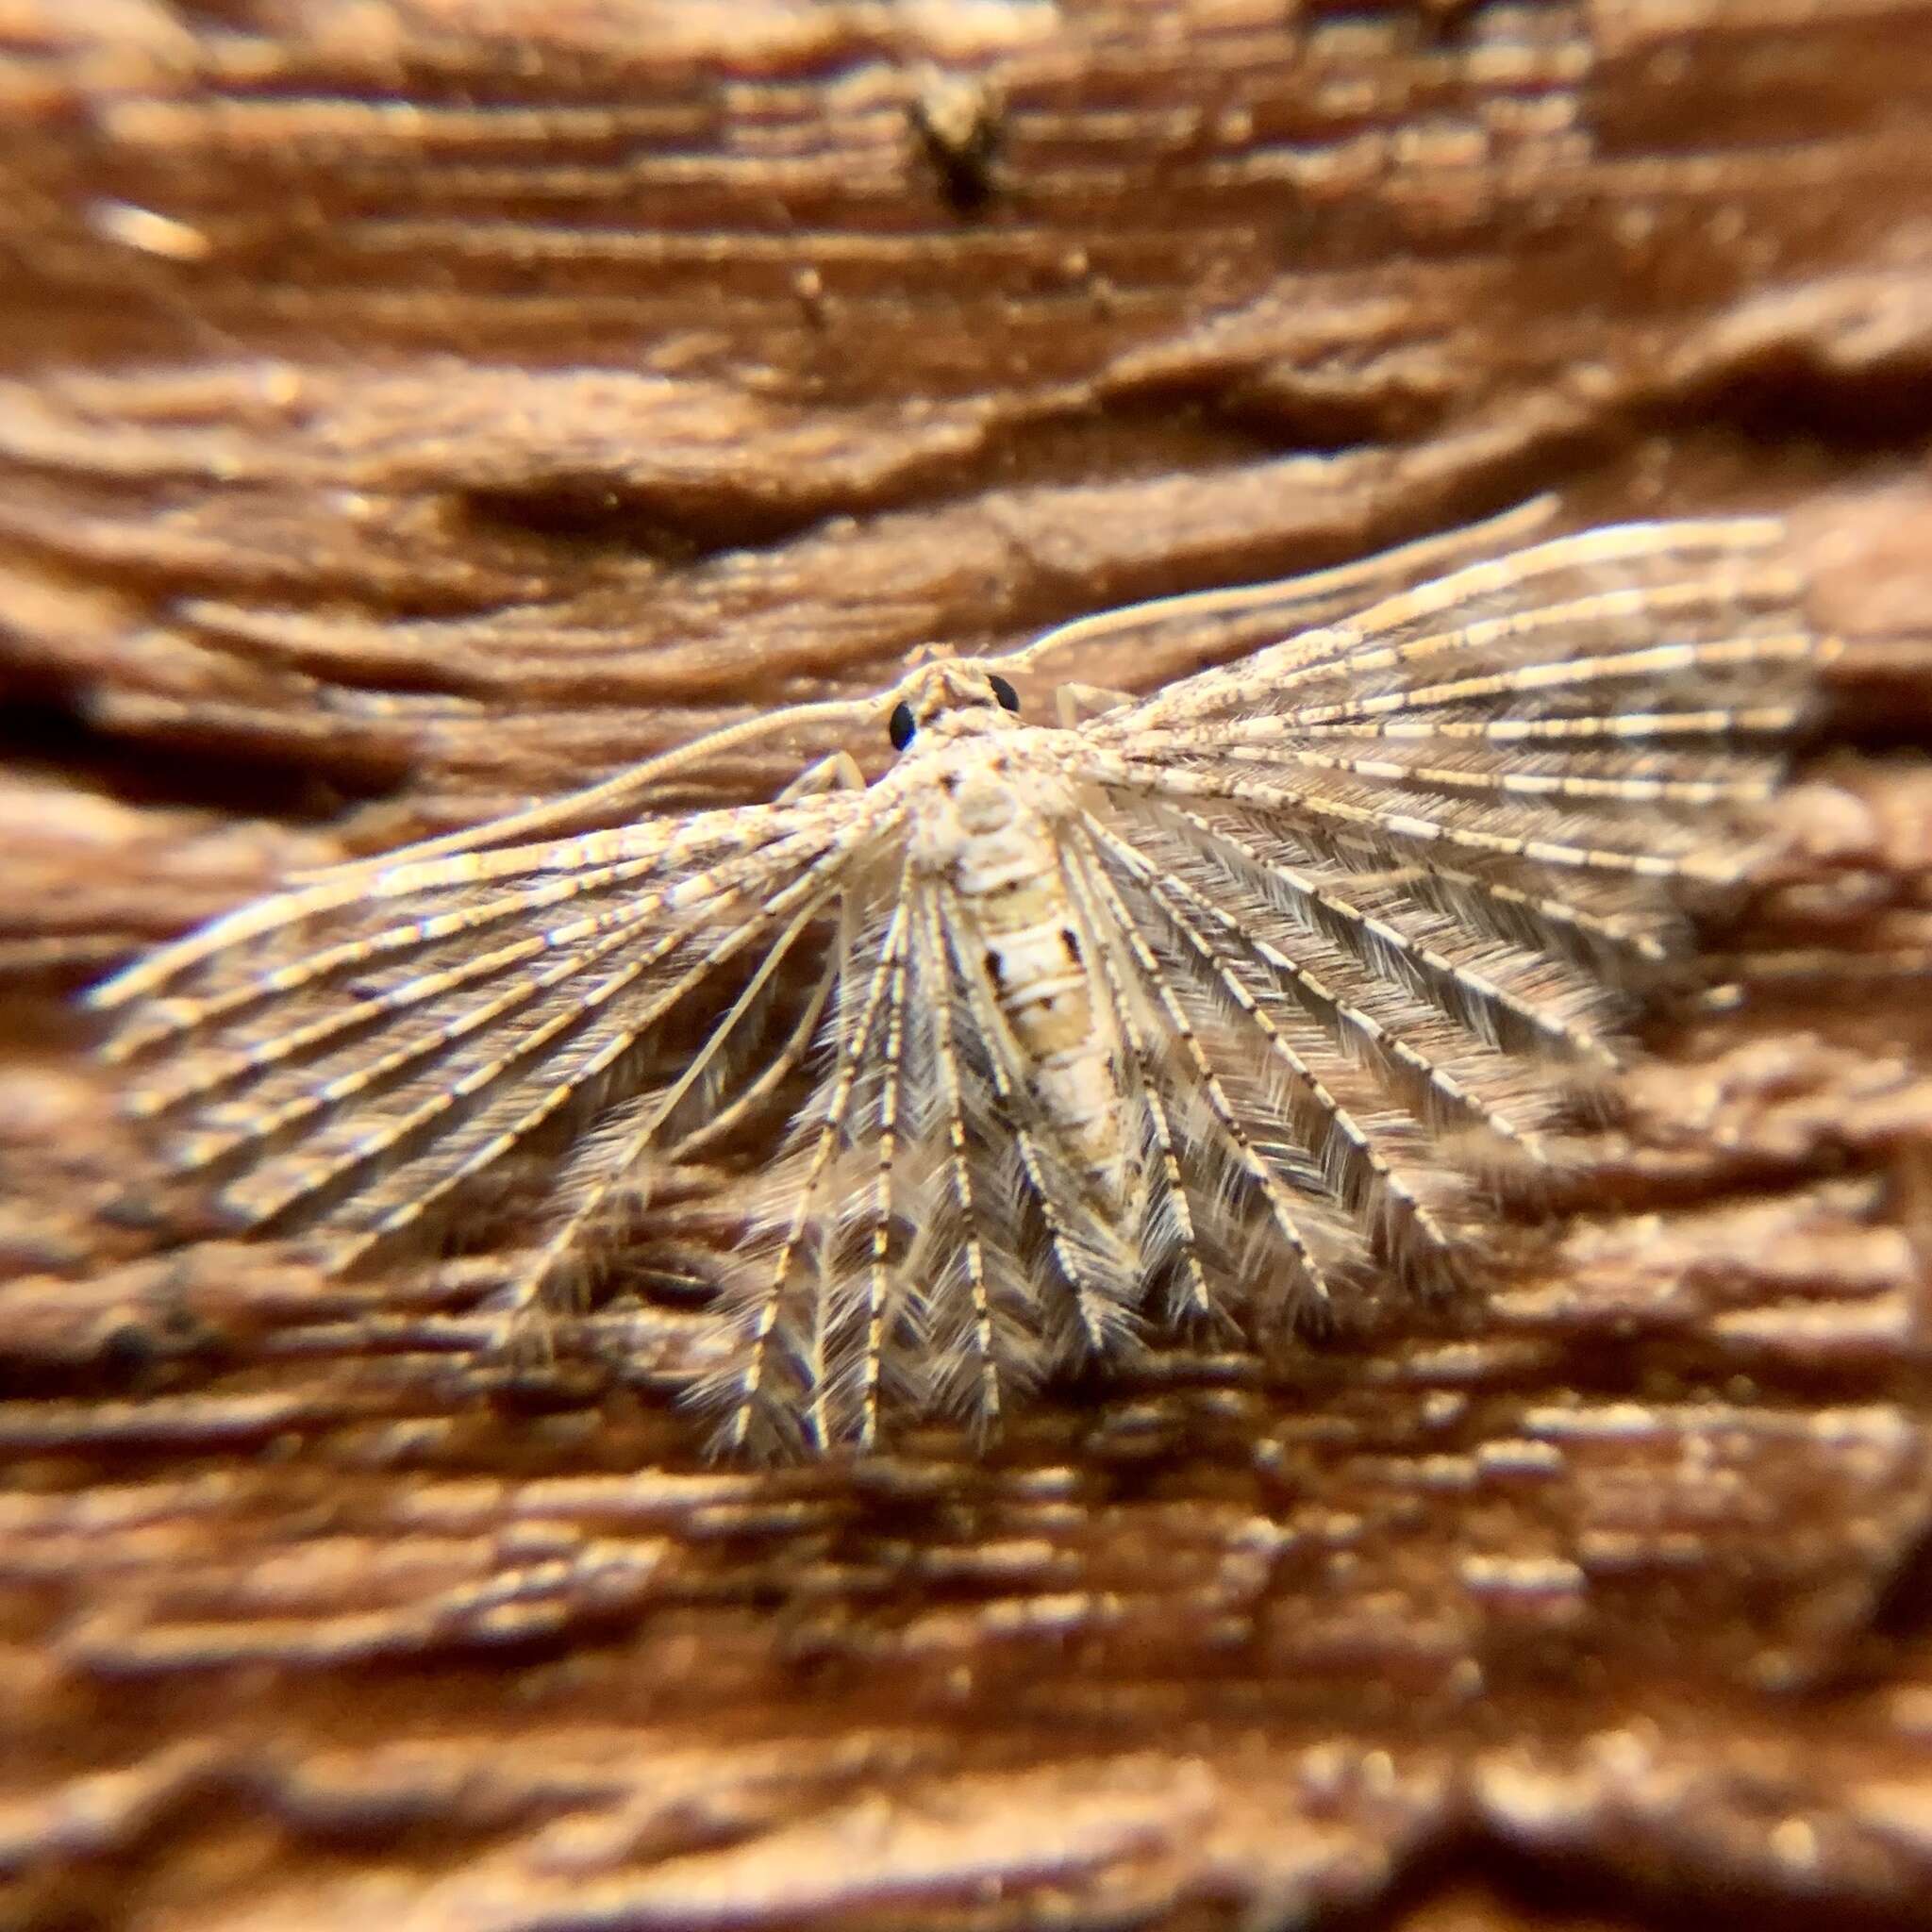 Image of Alucita pygmaea Meyrick 1890